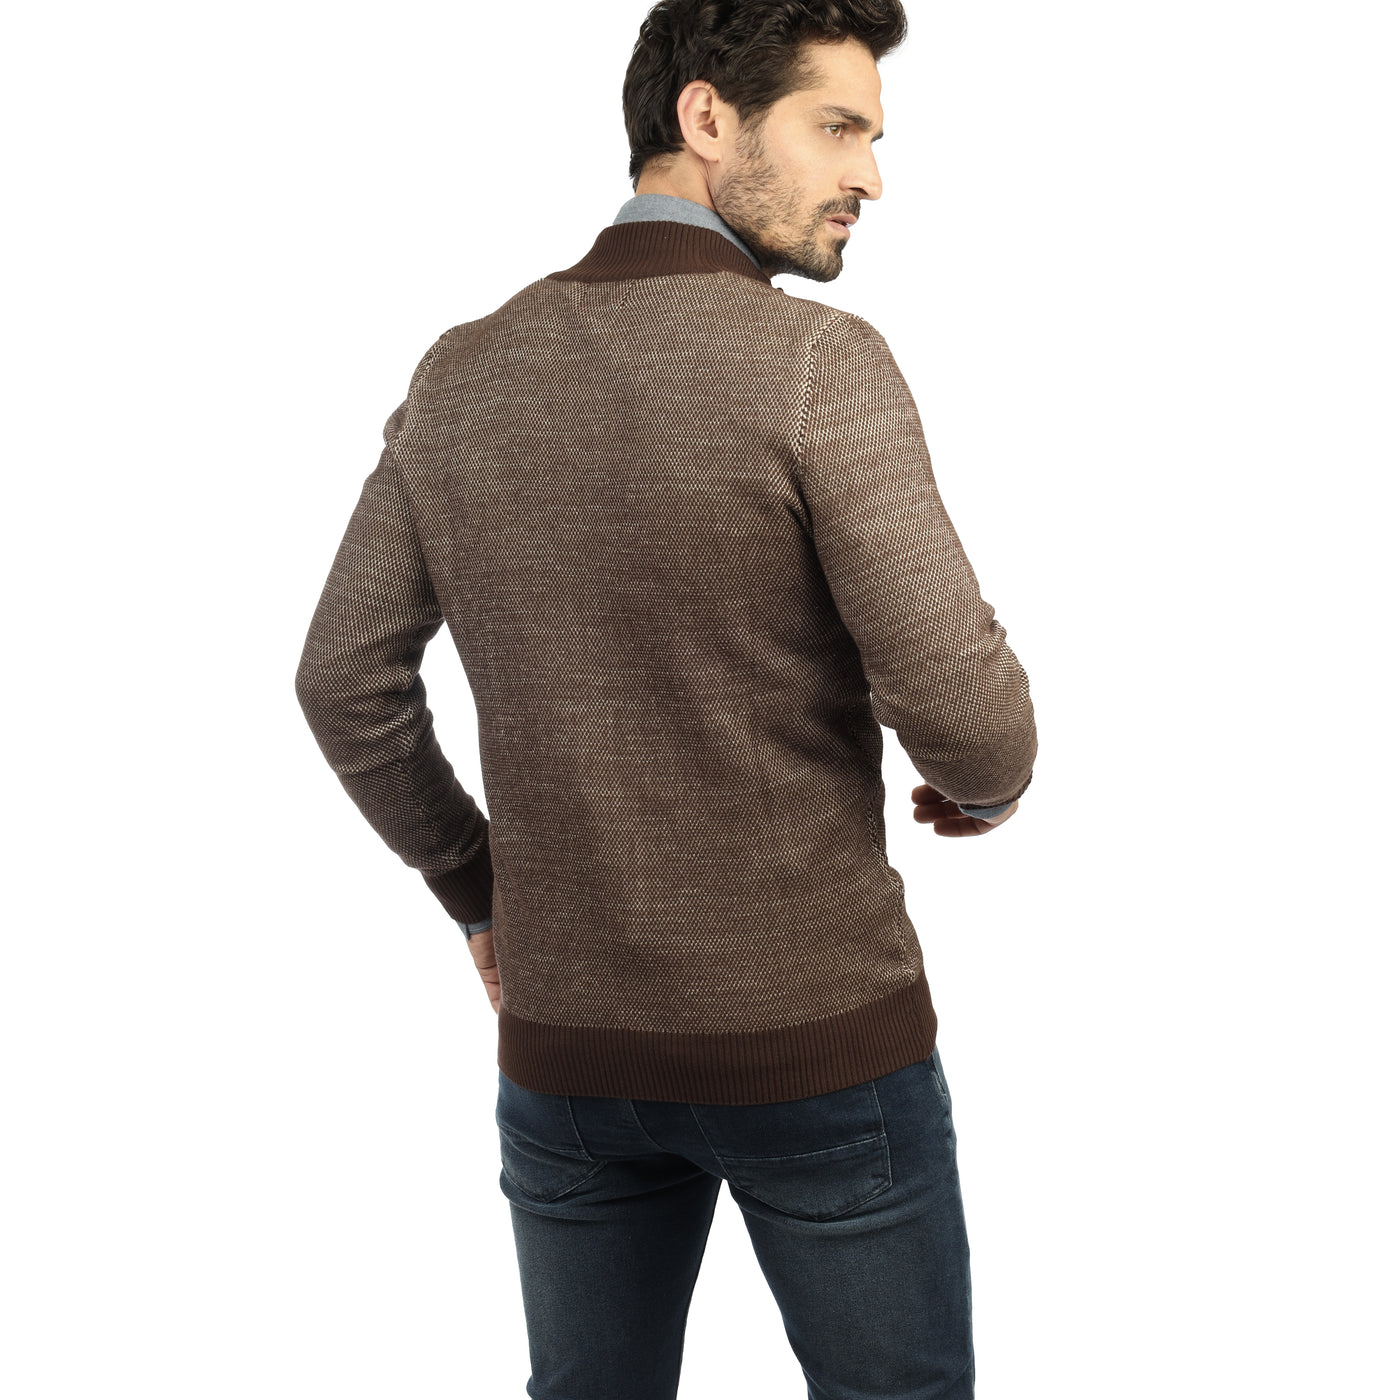 Brown knitwear jacket.